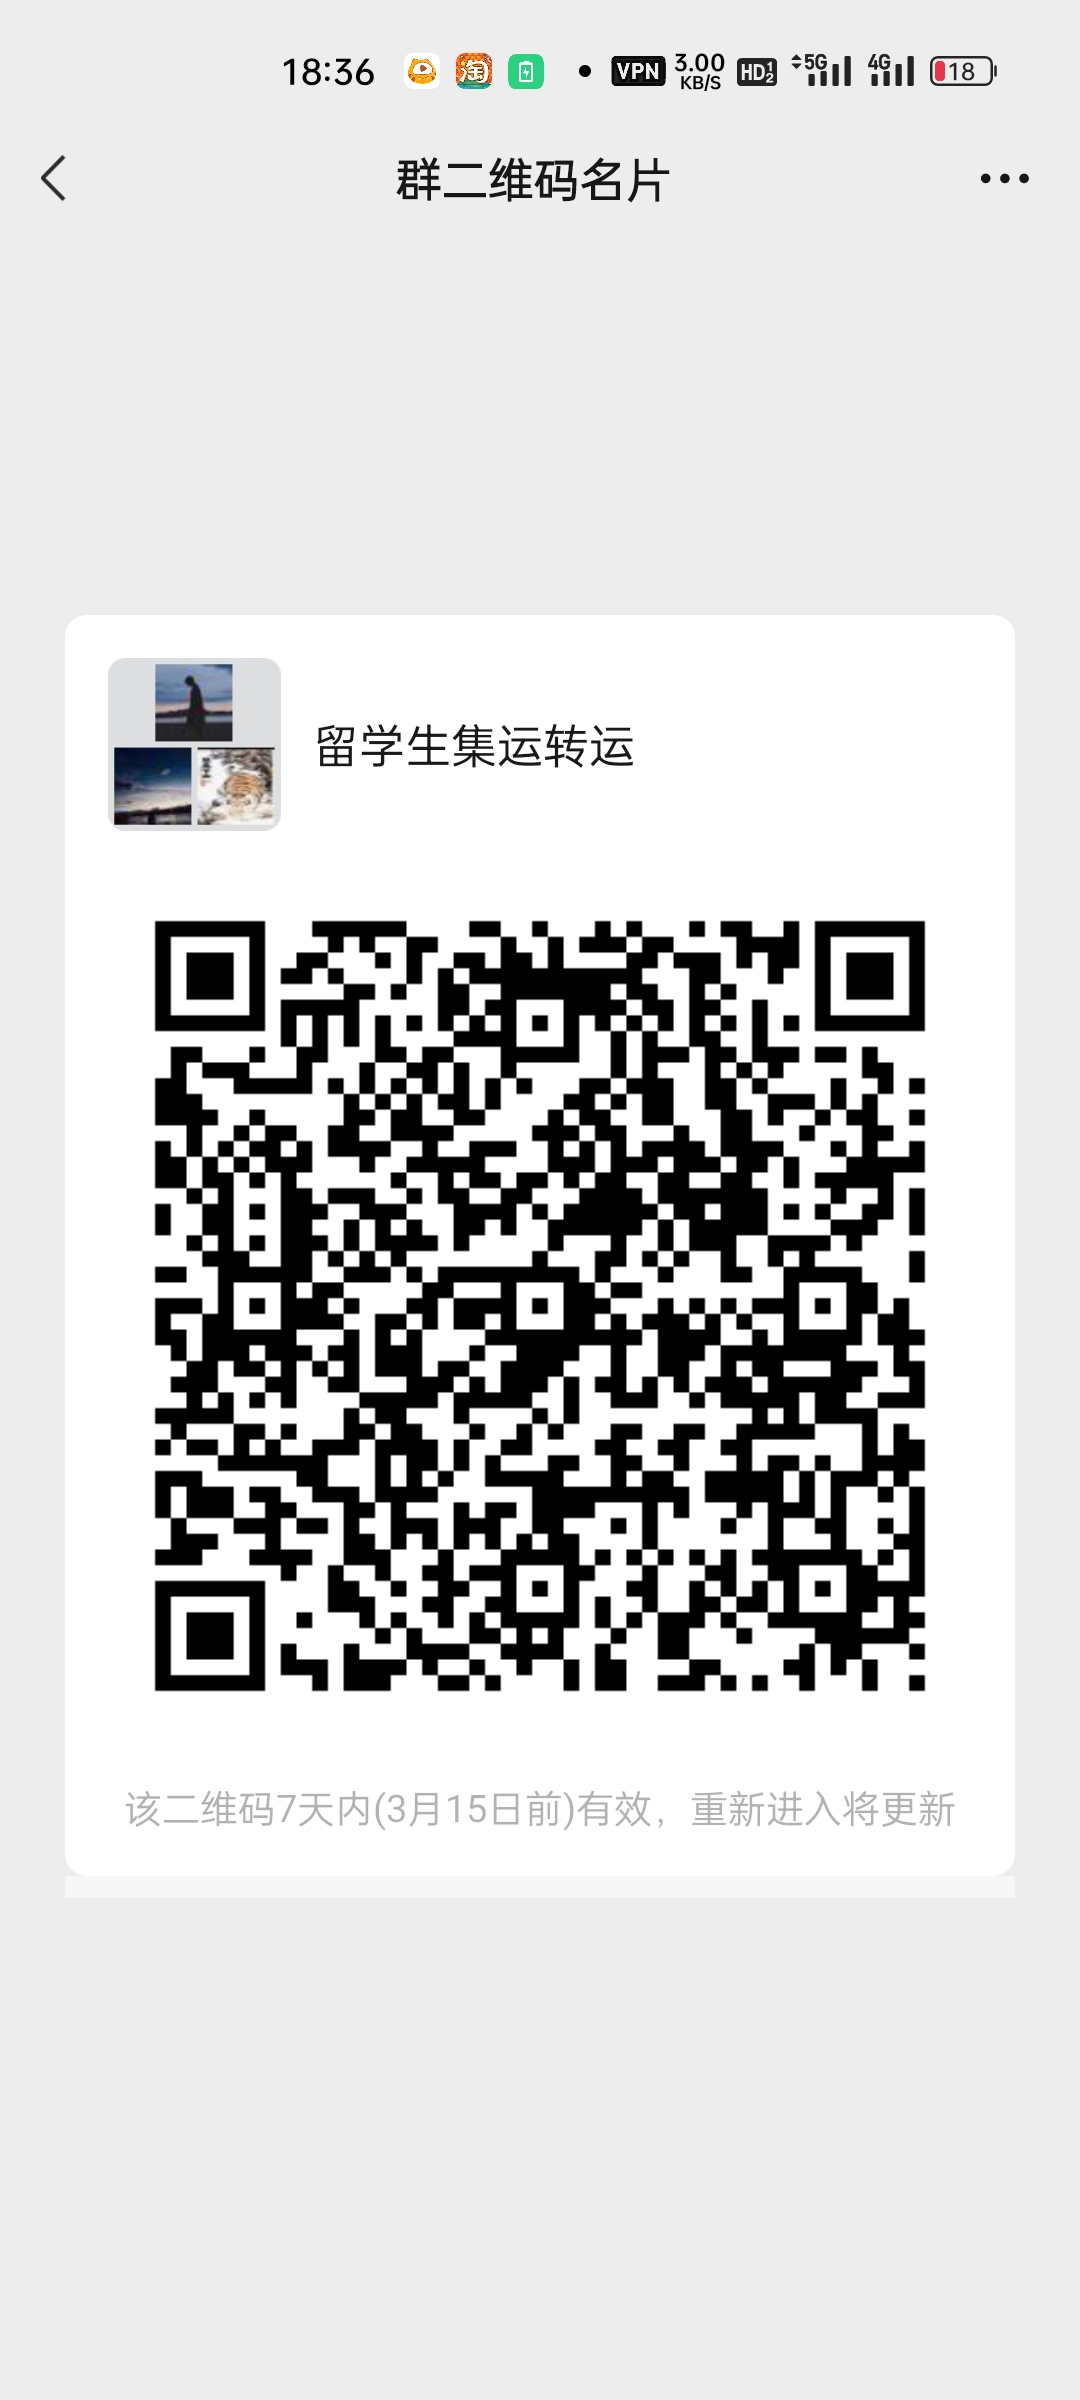 中国留学生国际快递转运 群微信二维码